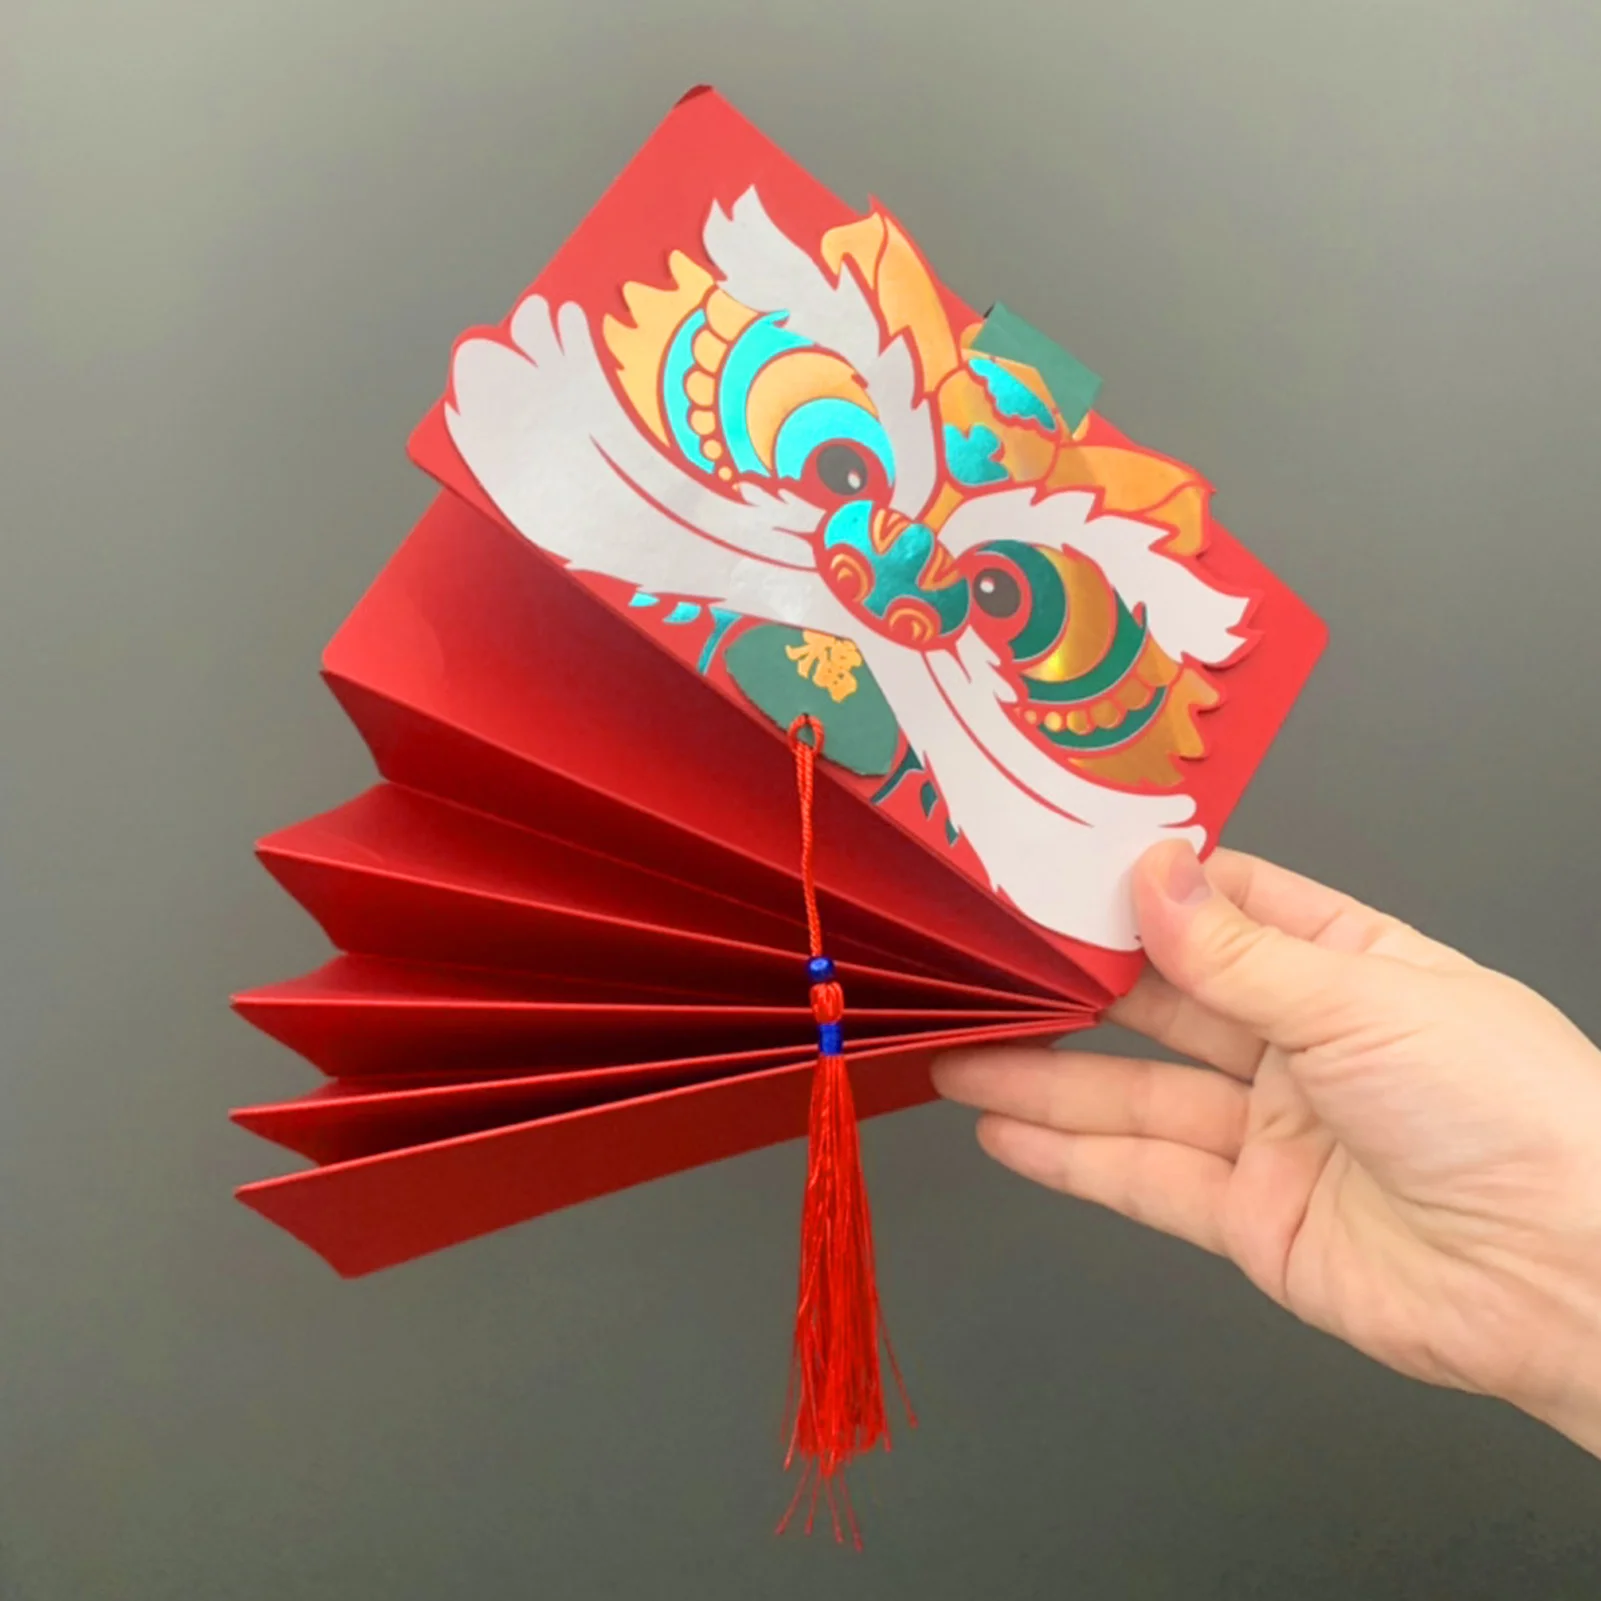 

2022 китайские новогодние красные конверты, креативная складная сумка Hongbao с тигровыми карманами для денег на праздник весны, красный пакет